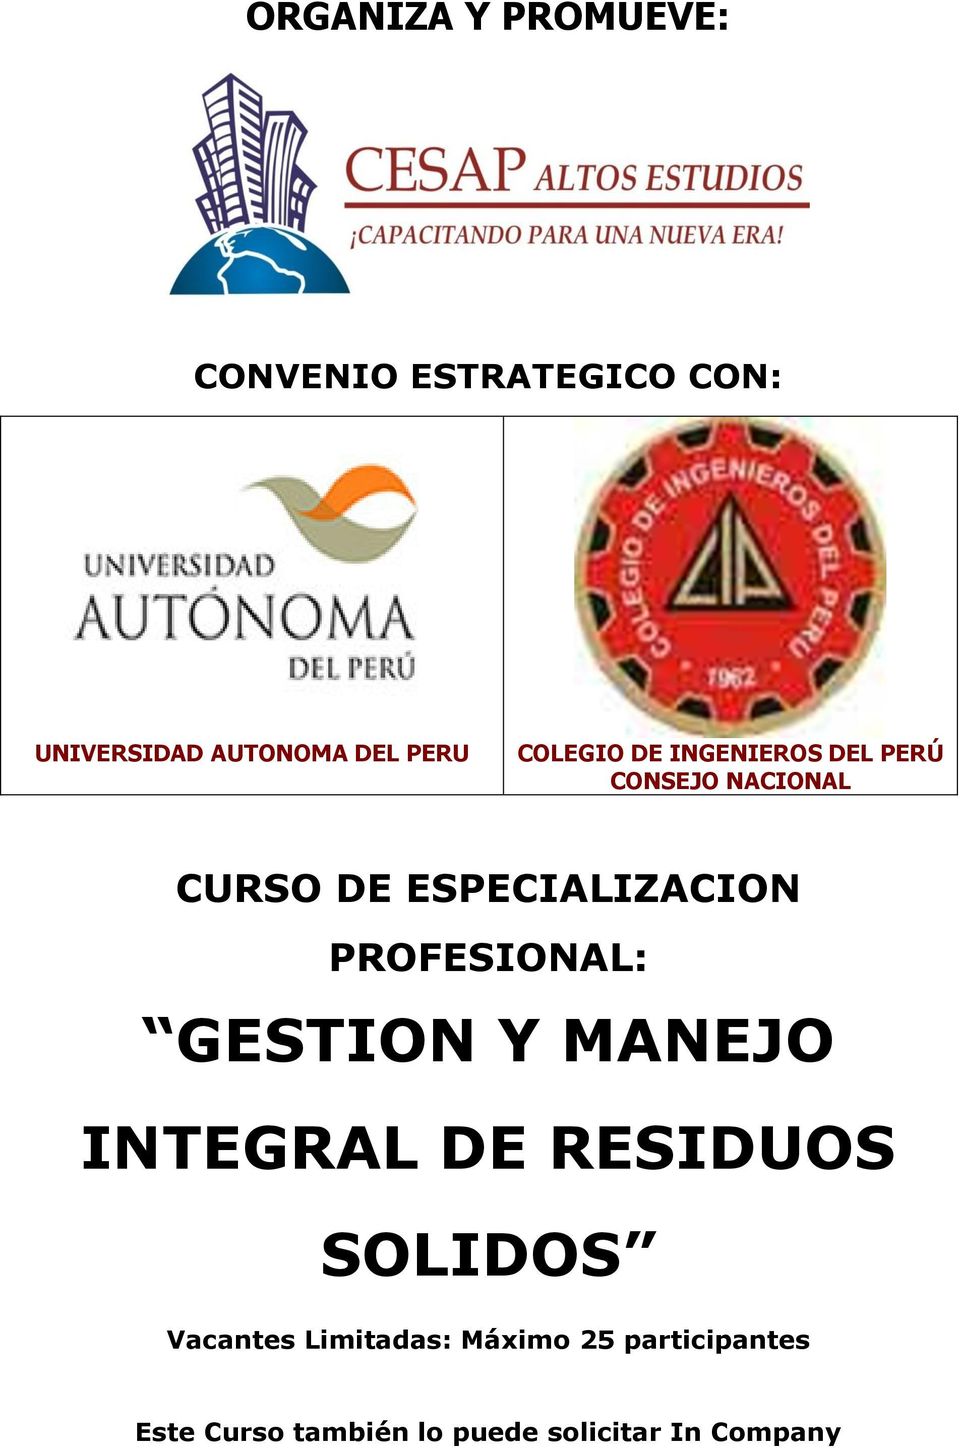 ESPECIALIZACION PROFESIONAL: GESTION Y MANEJO INTEGRAL DE RESIDUOS SOLIDOS